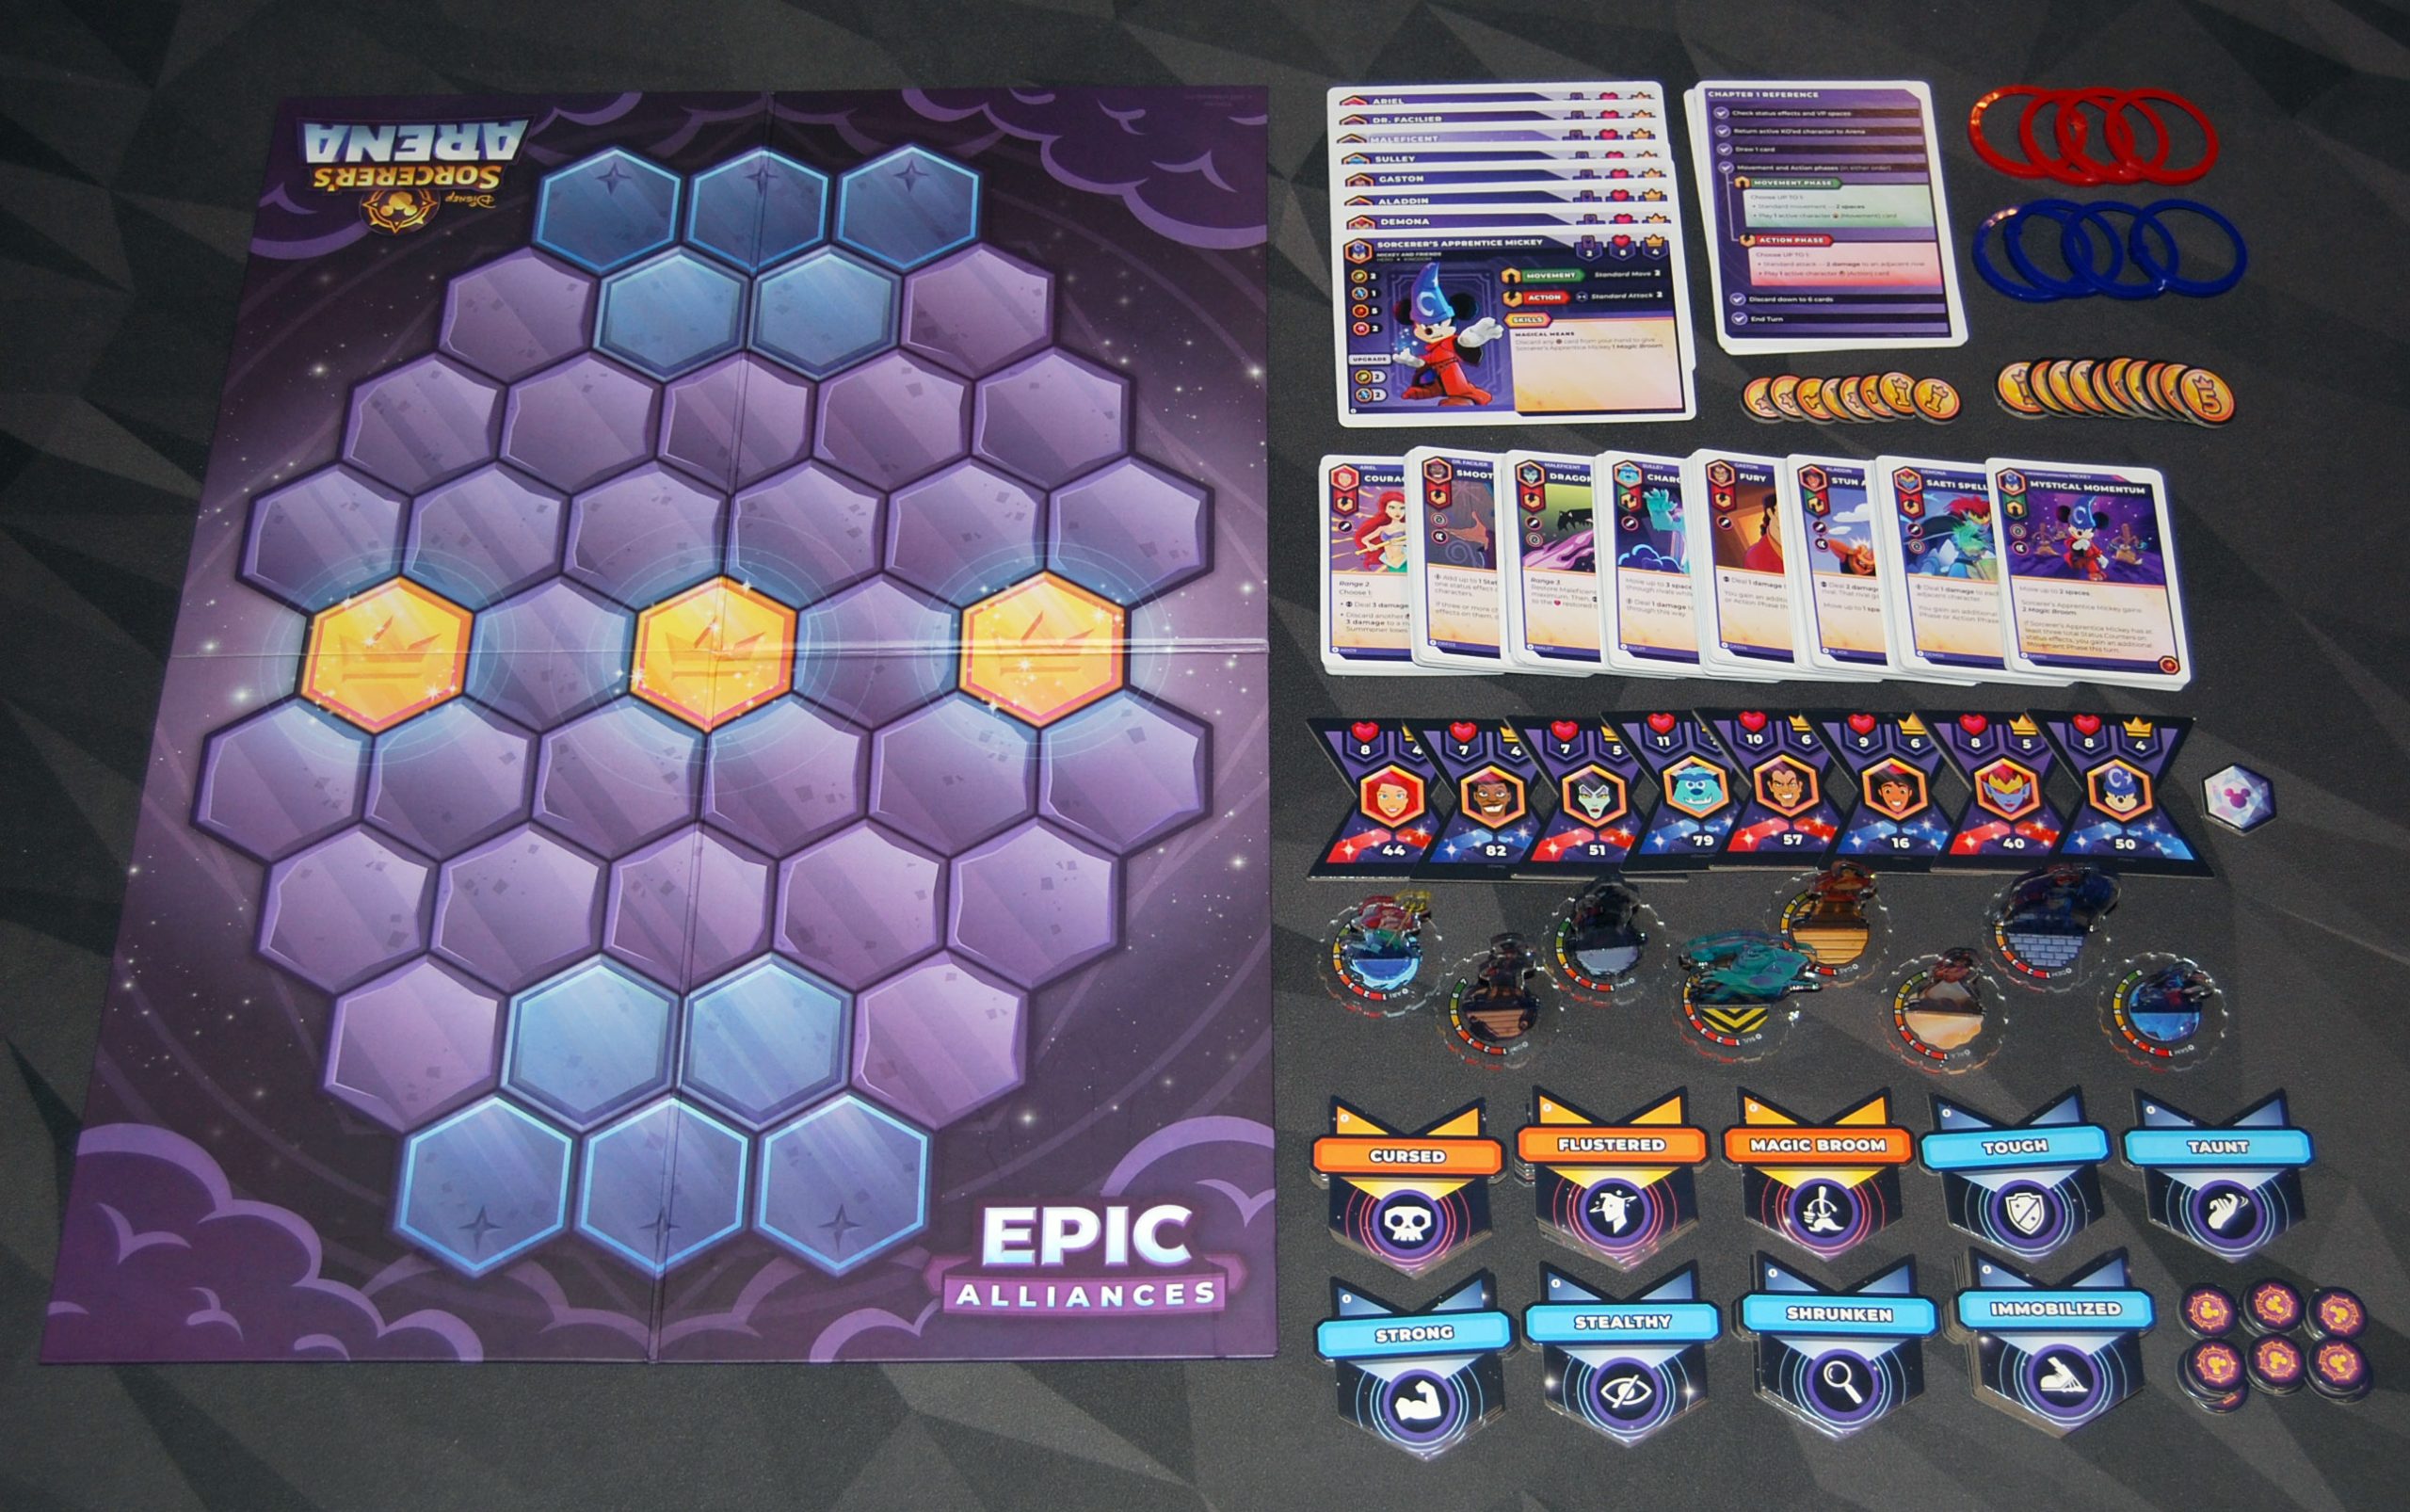 Disney Sorcerer's Arena: Epic Alliances Core Set components